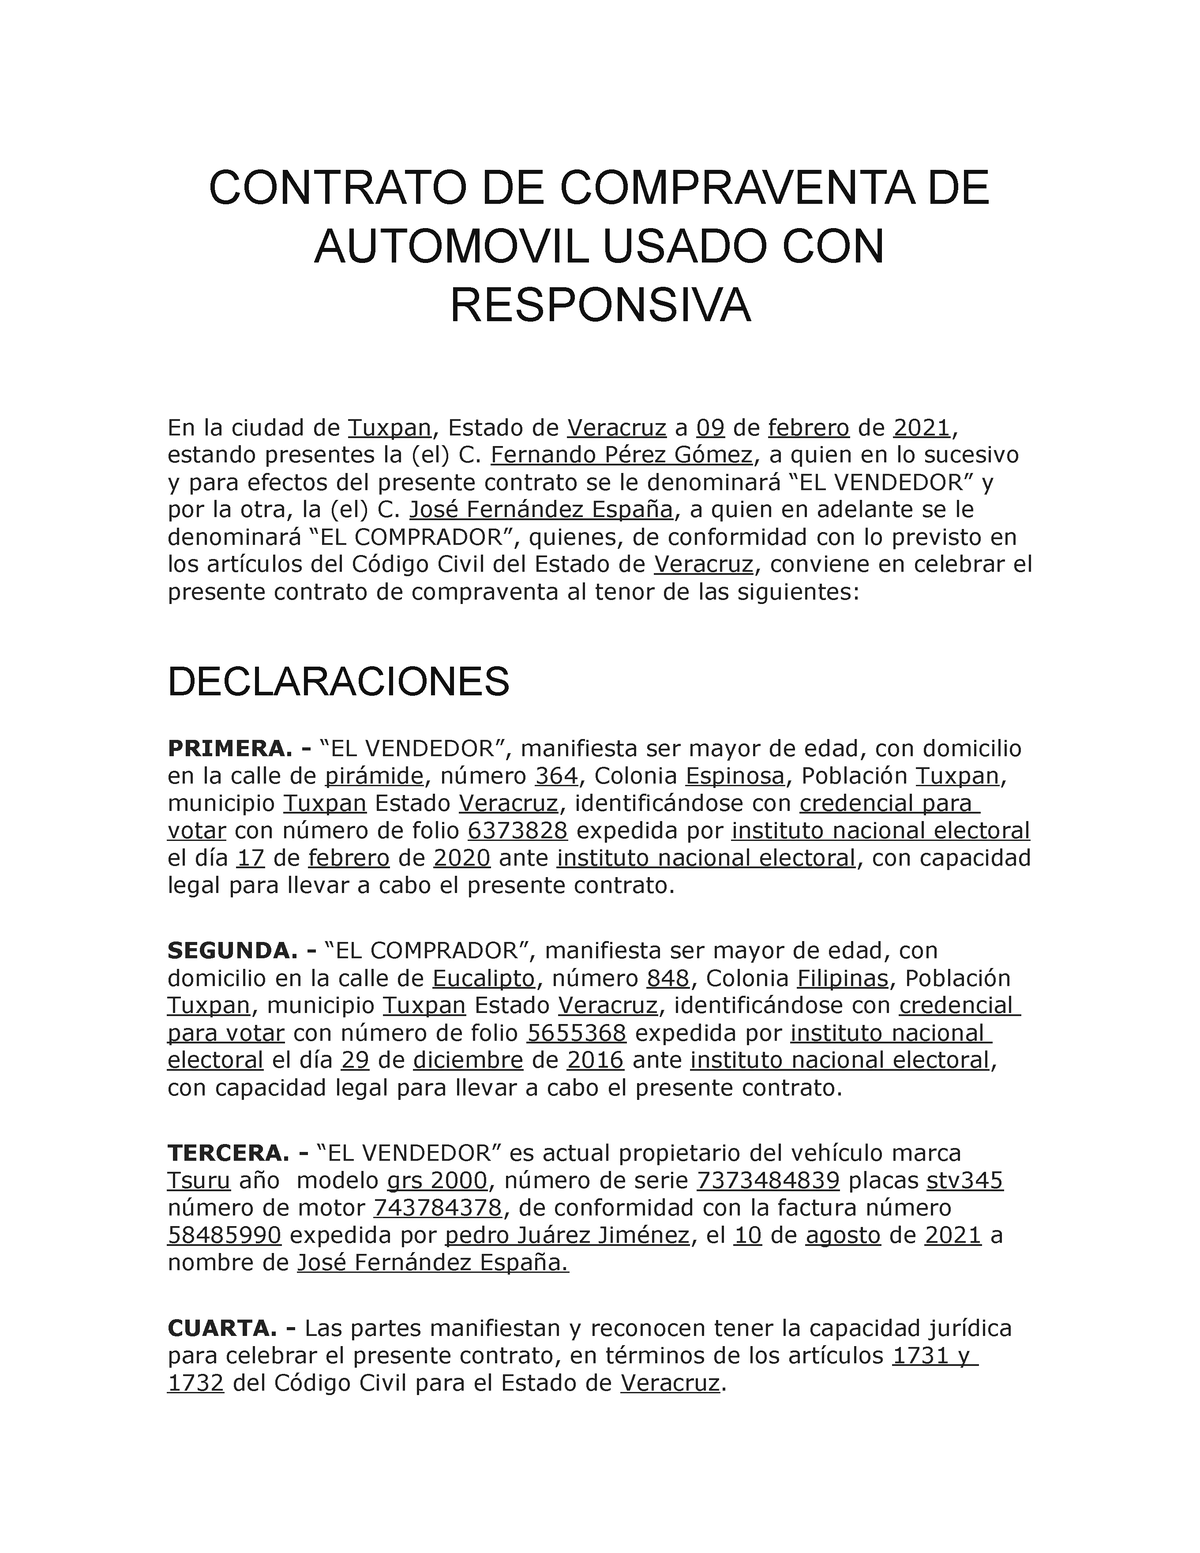 Contrato De Compraventa Contrato De Compraventa De Automovil Usado Con Responsiva En La Ciudad 8411